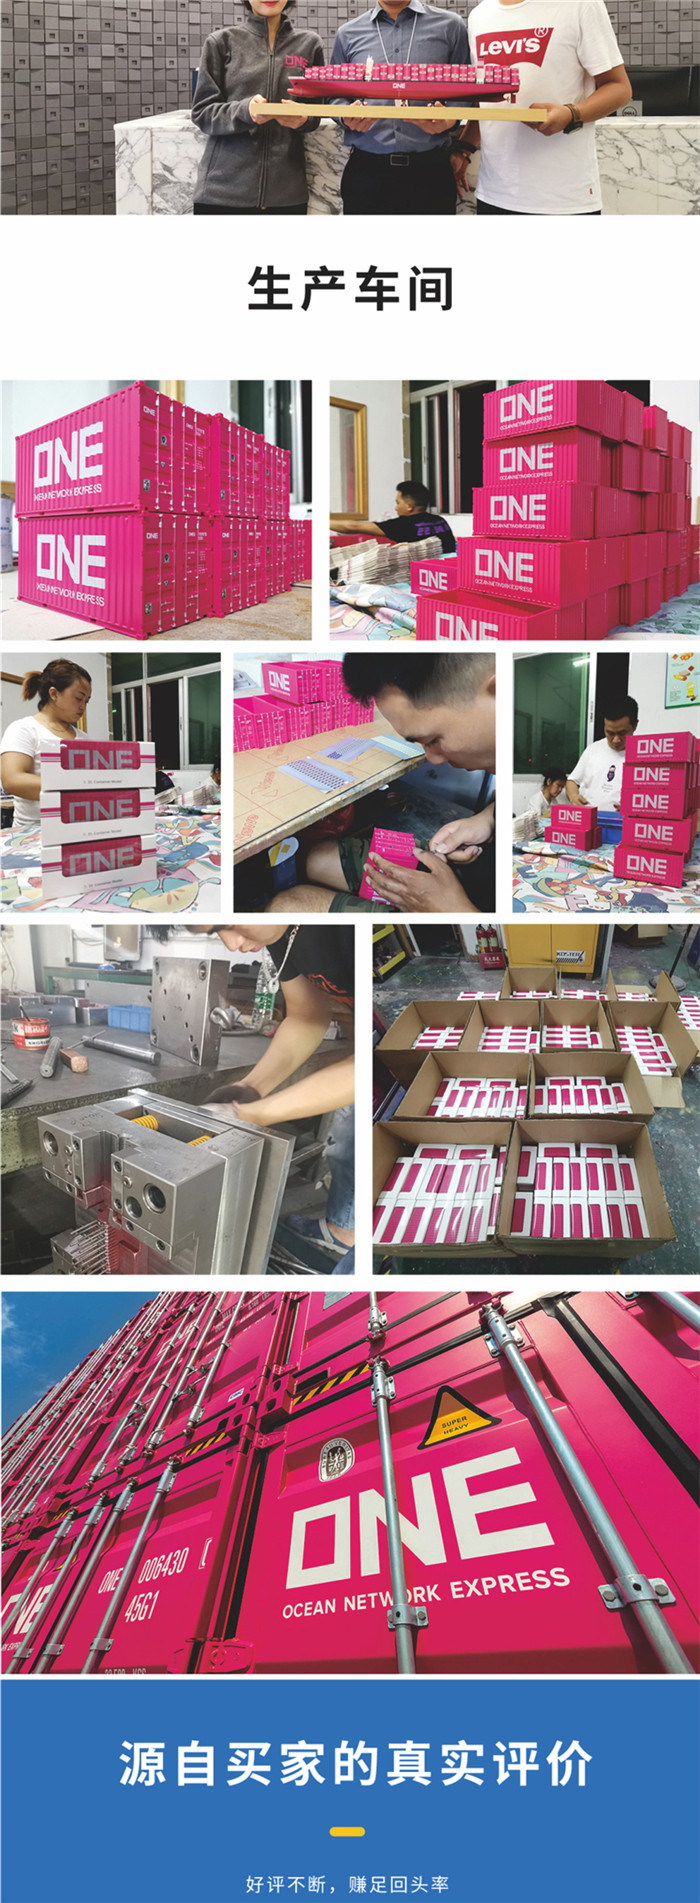 海艺坊集装箱货柜模型工厂生产制作各种：运输集装箱模型纸巾盒笔筒,运输集装箱模型工厂,运输集装箱模型生产厂家。